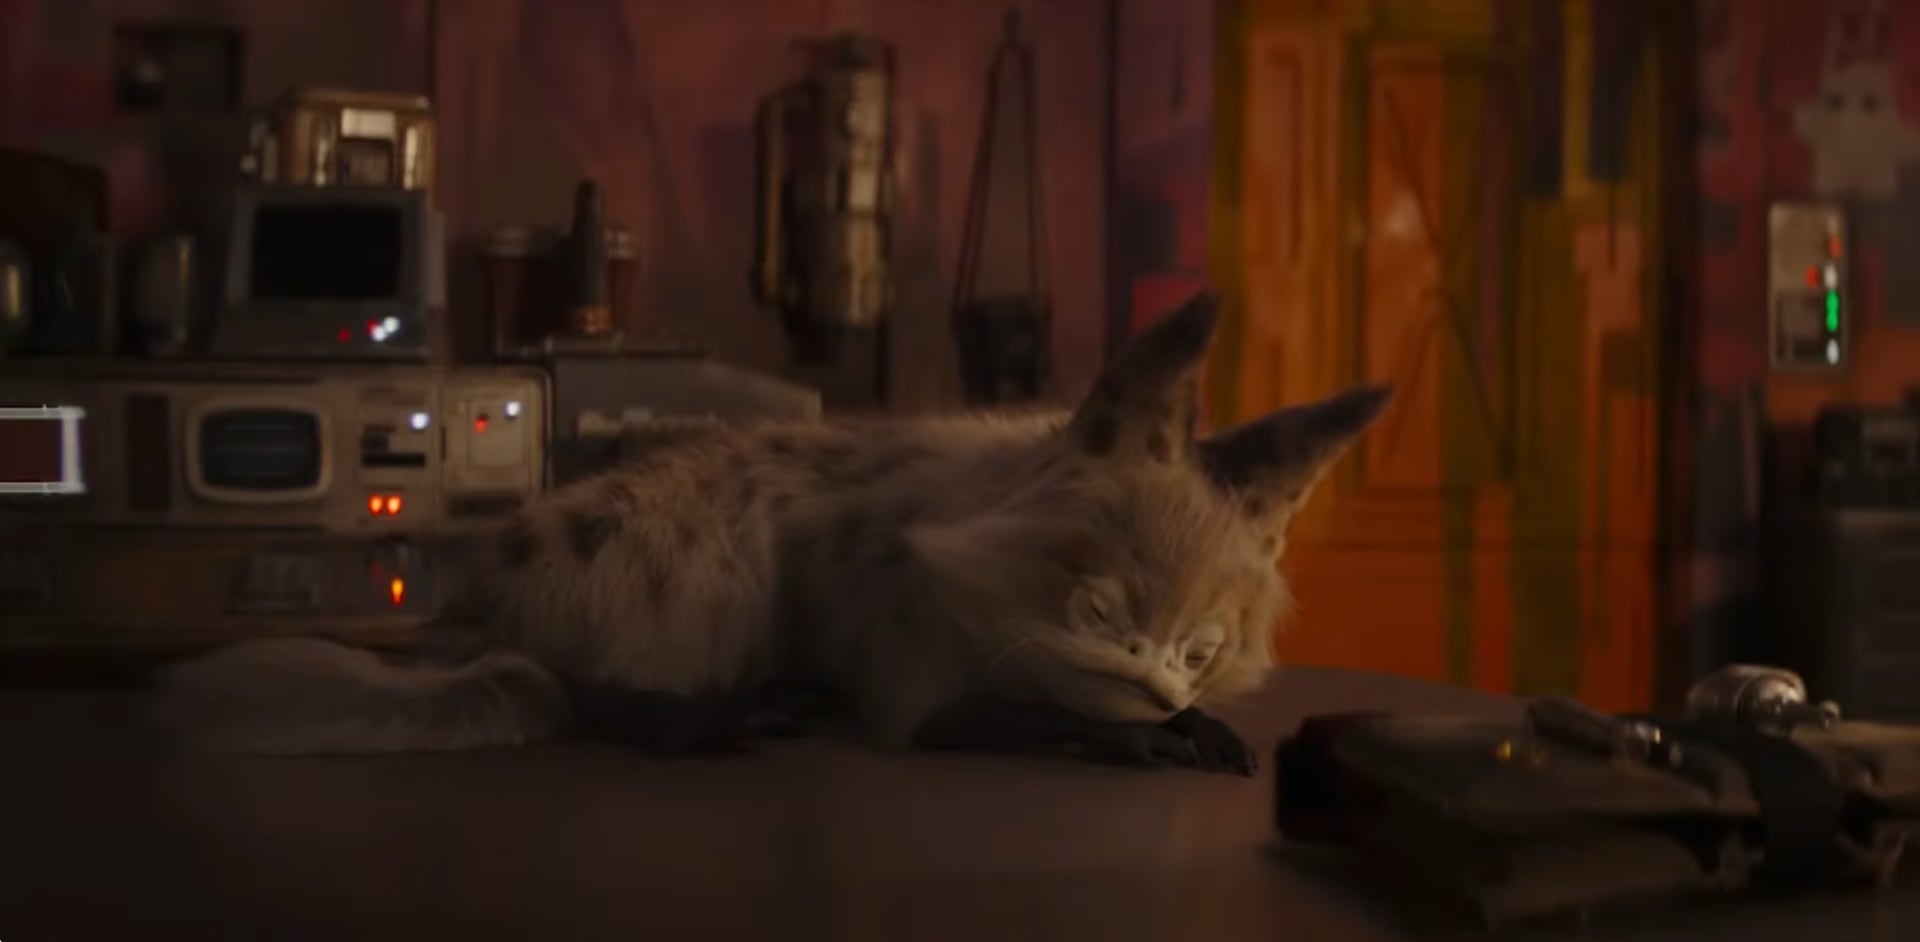 Дисней випустила 12-годинне відео як спить лот-кіт Сабіни Врен, воно зібрало 200 000 переглядів